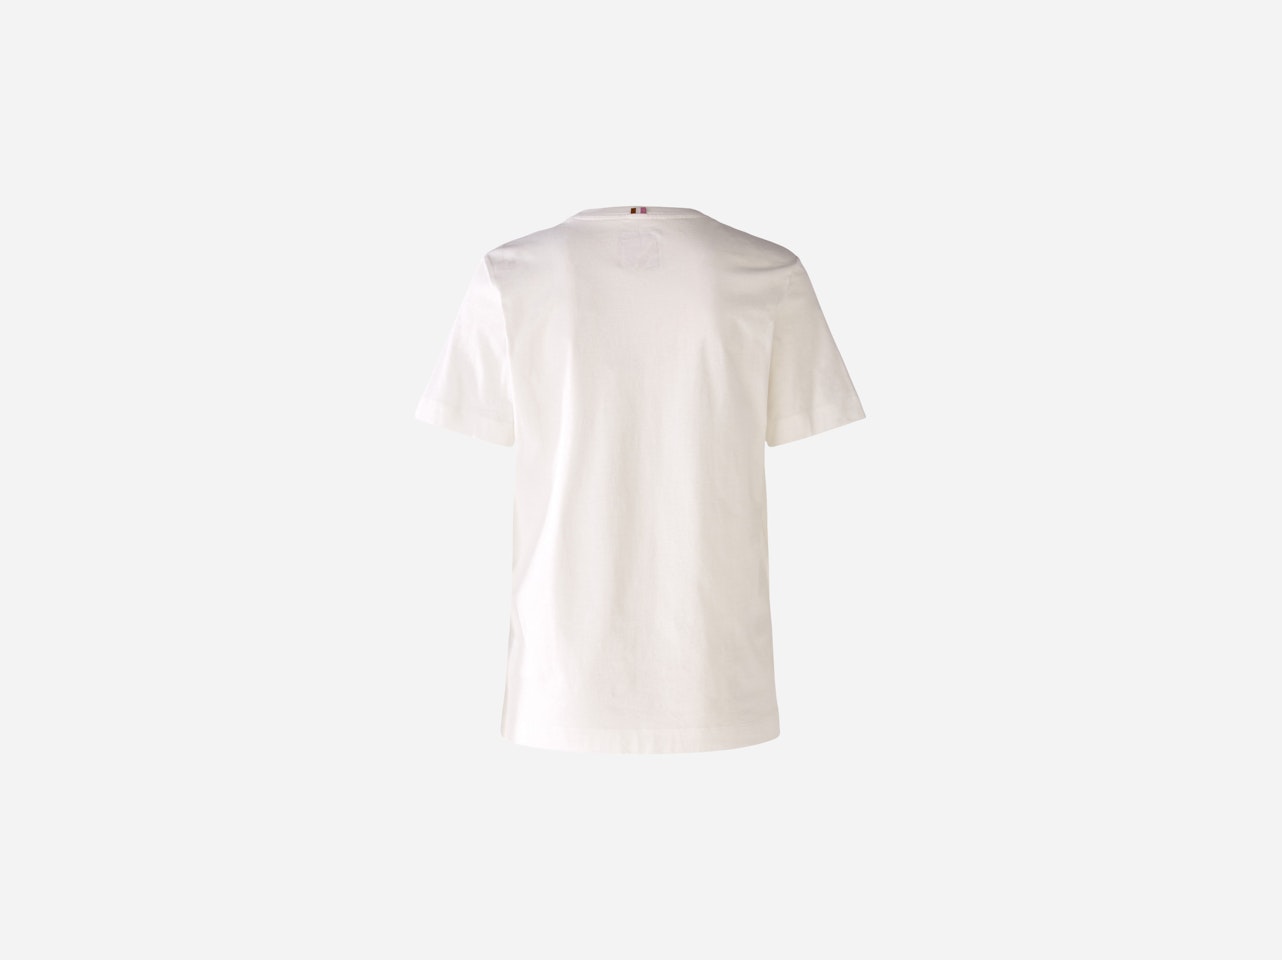 Bild 7 von T-shirt made from 100% organic cotton in white violett | Oui